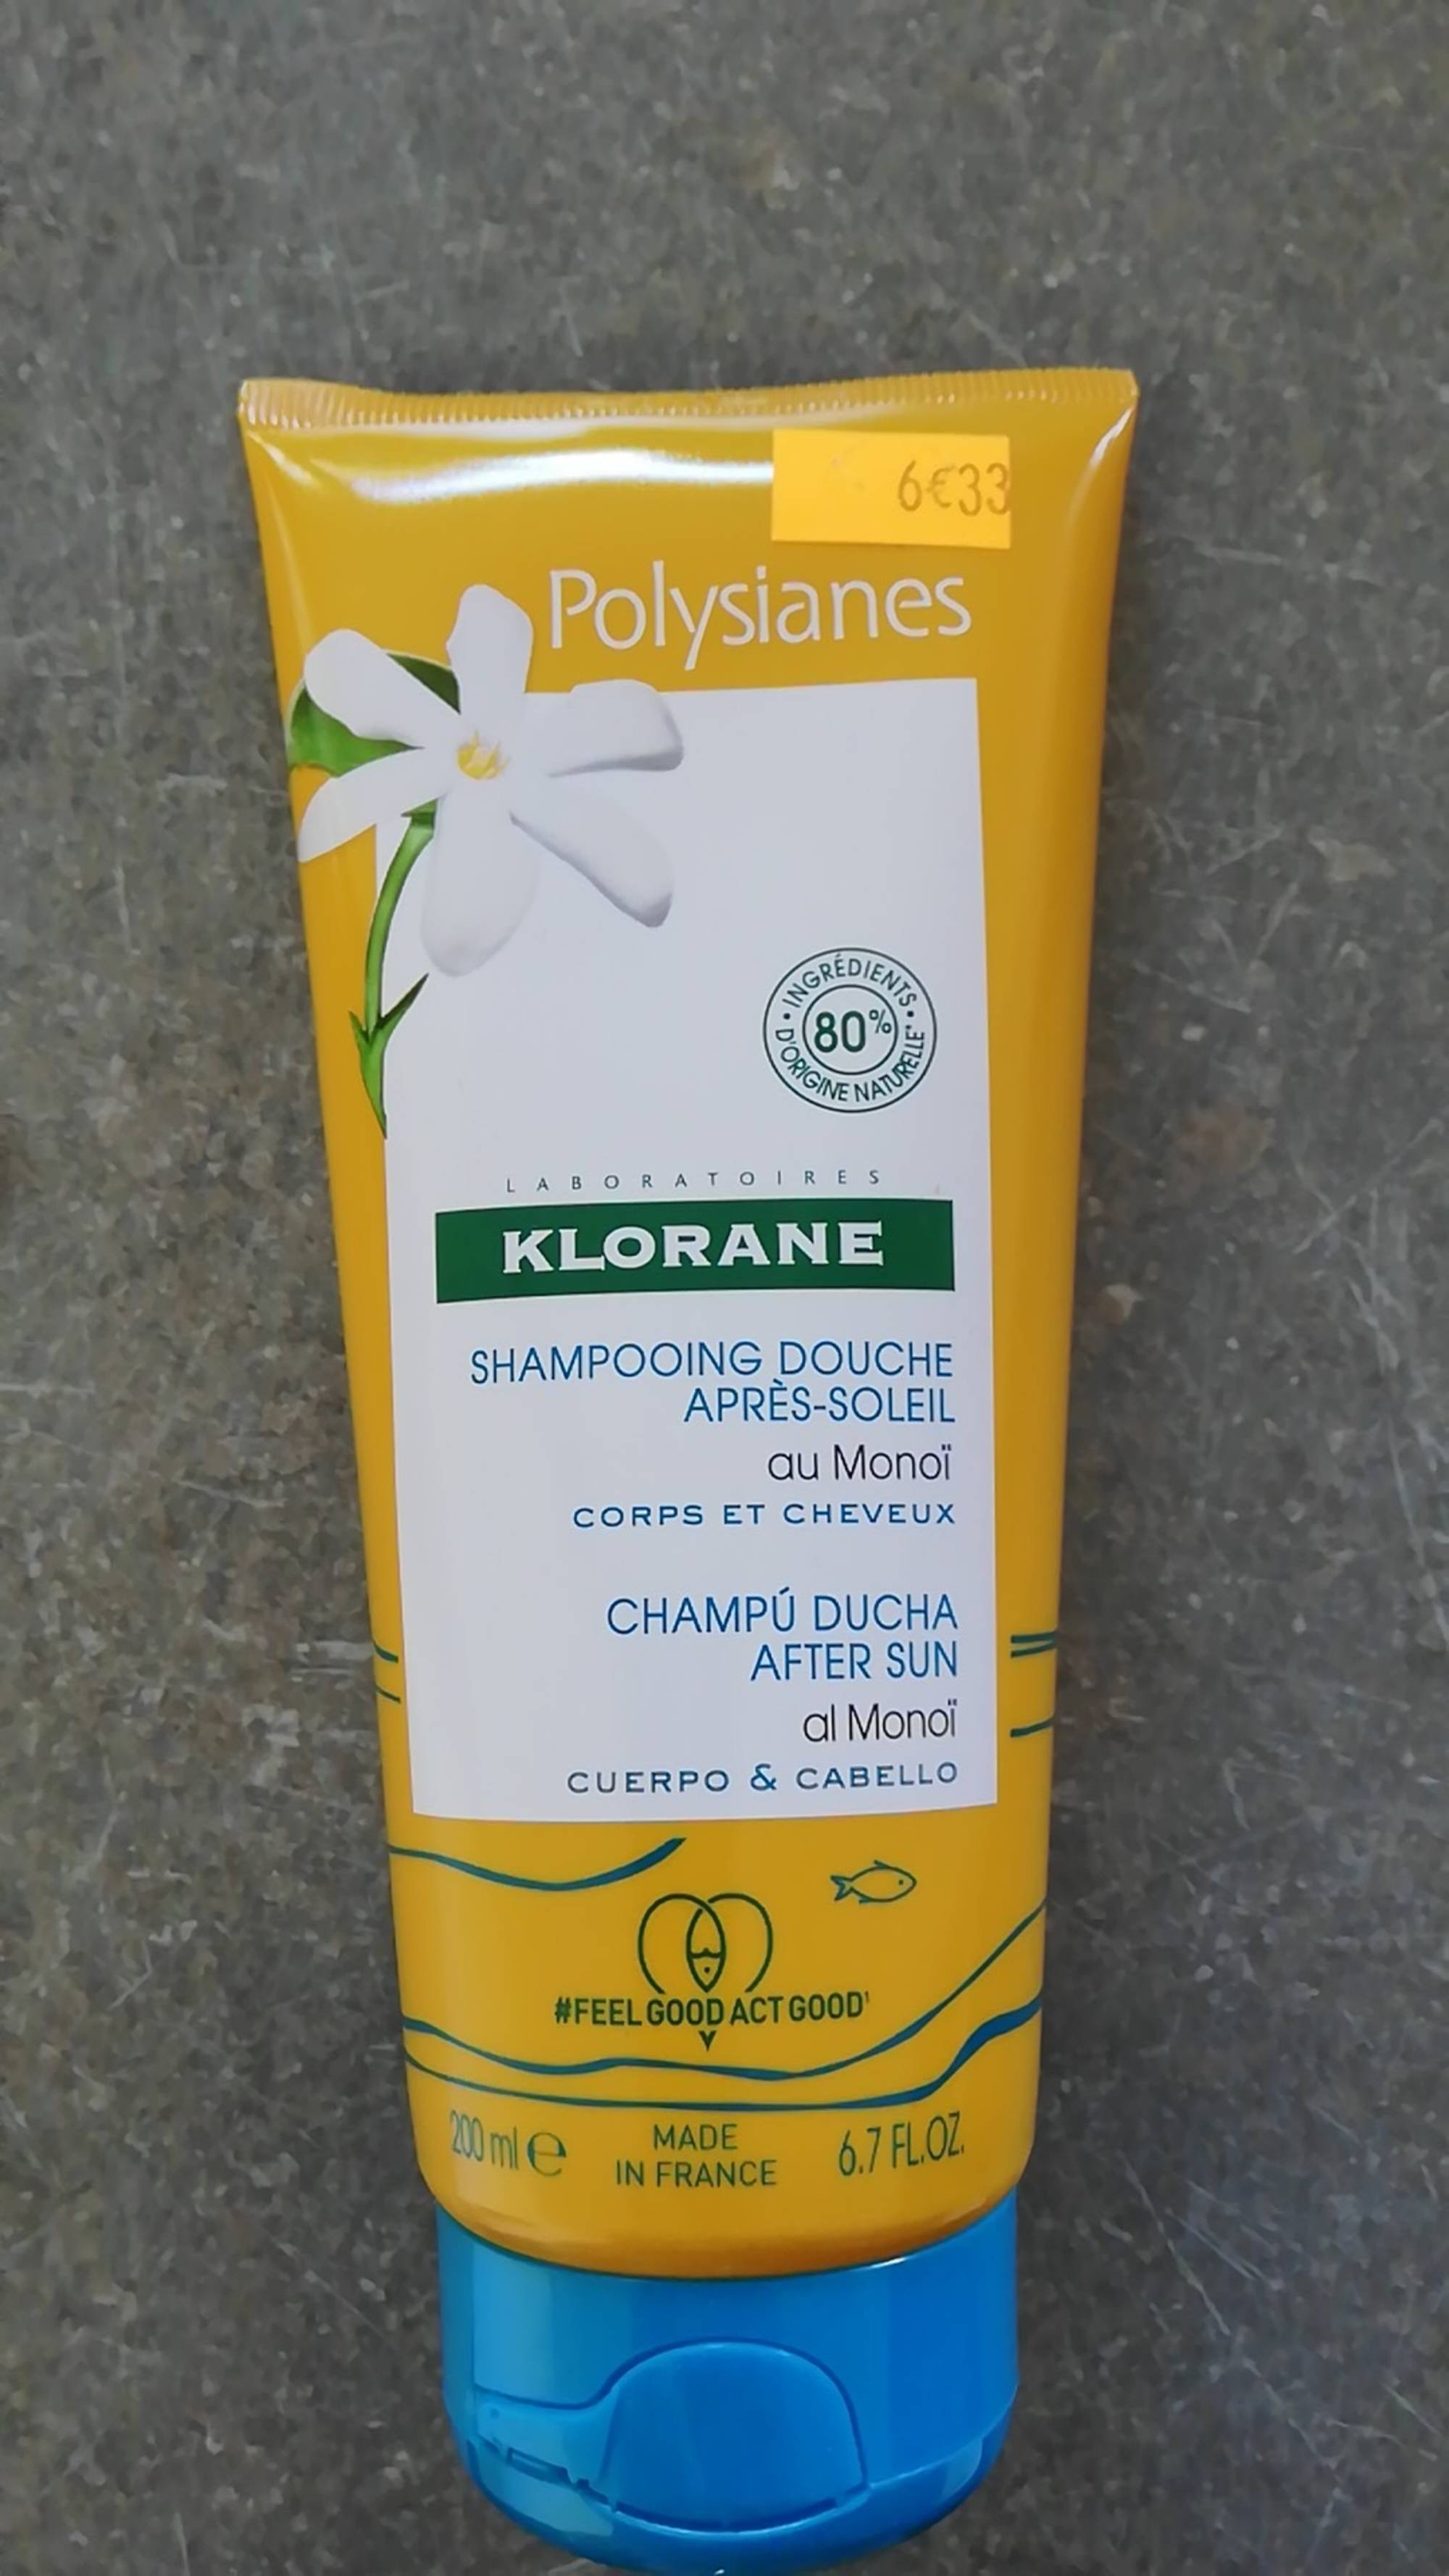 KLORANE - Polysianes - Shampooing douche après-soleil au monoï